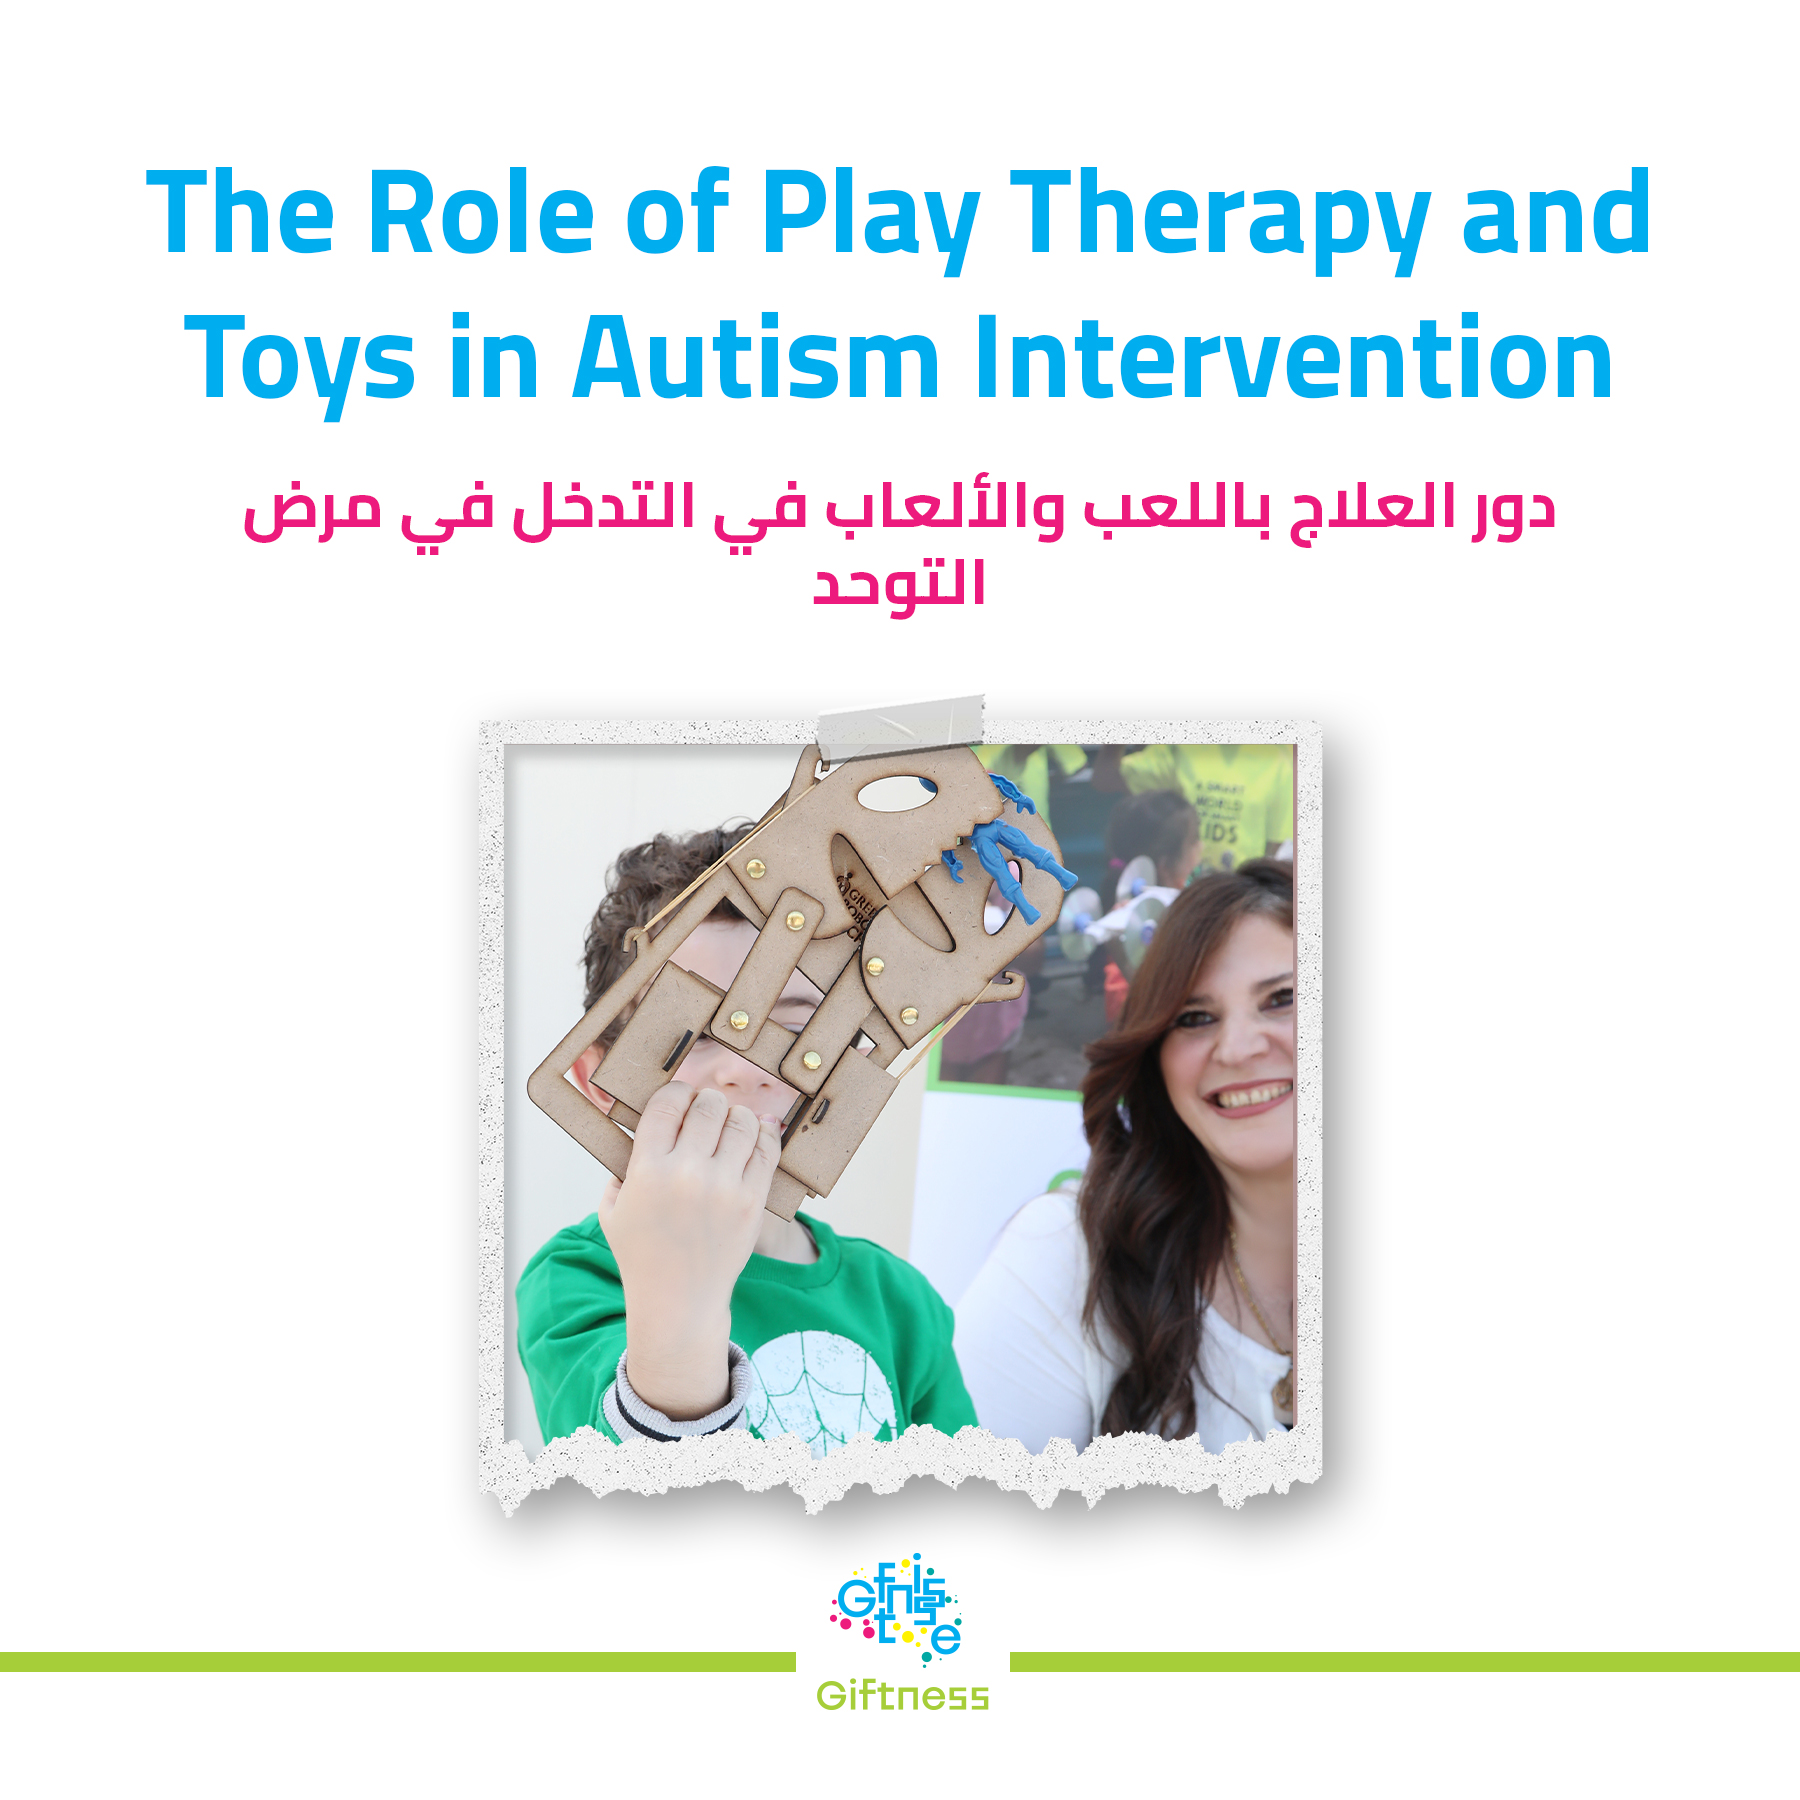 “دور اللعب والألعاب في علاج مرض التوحد”